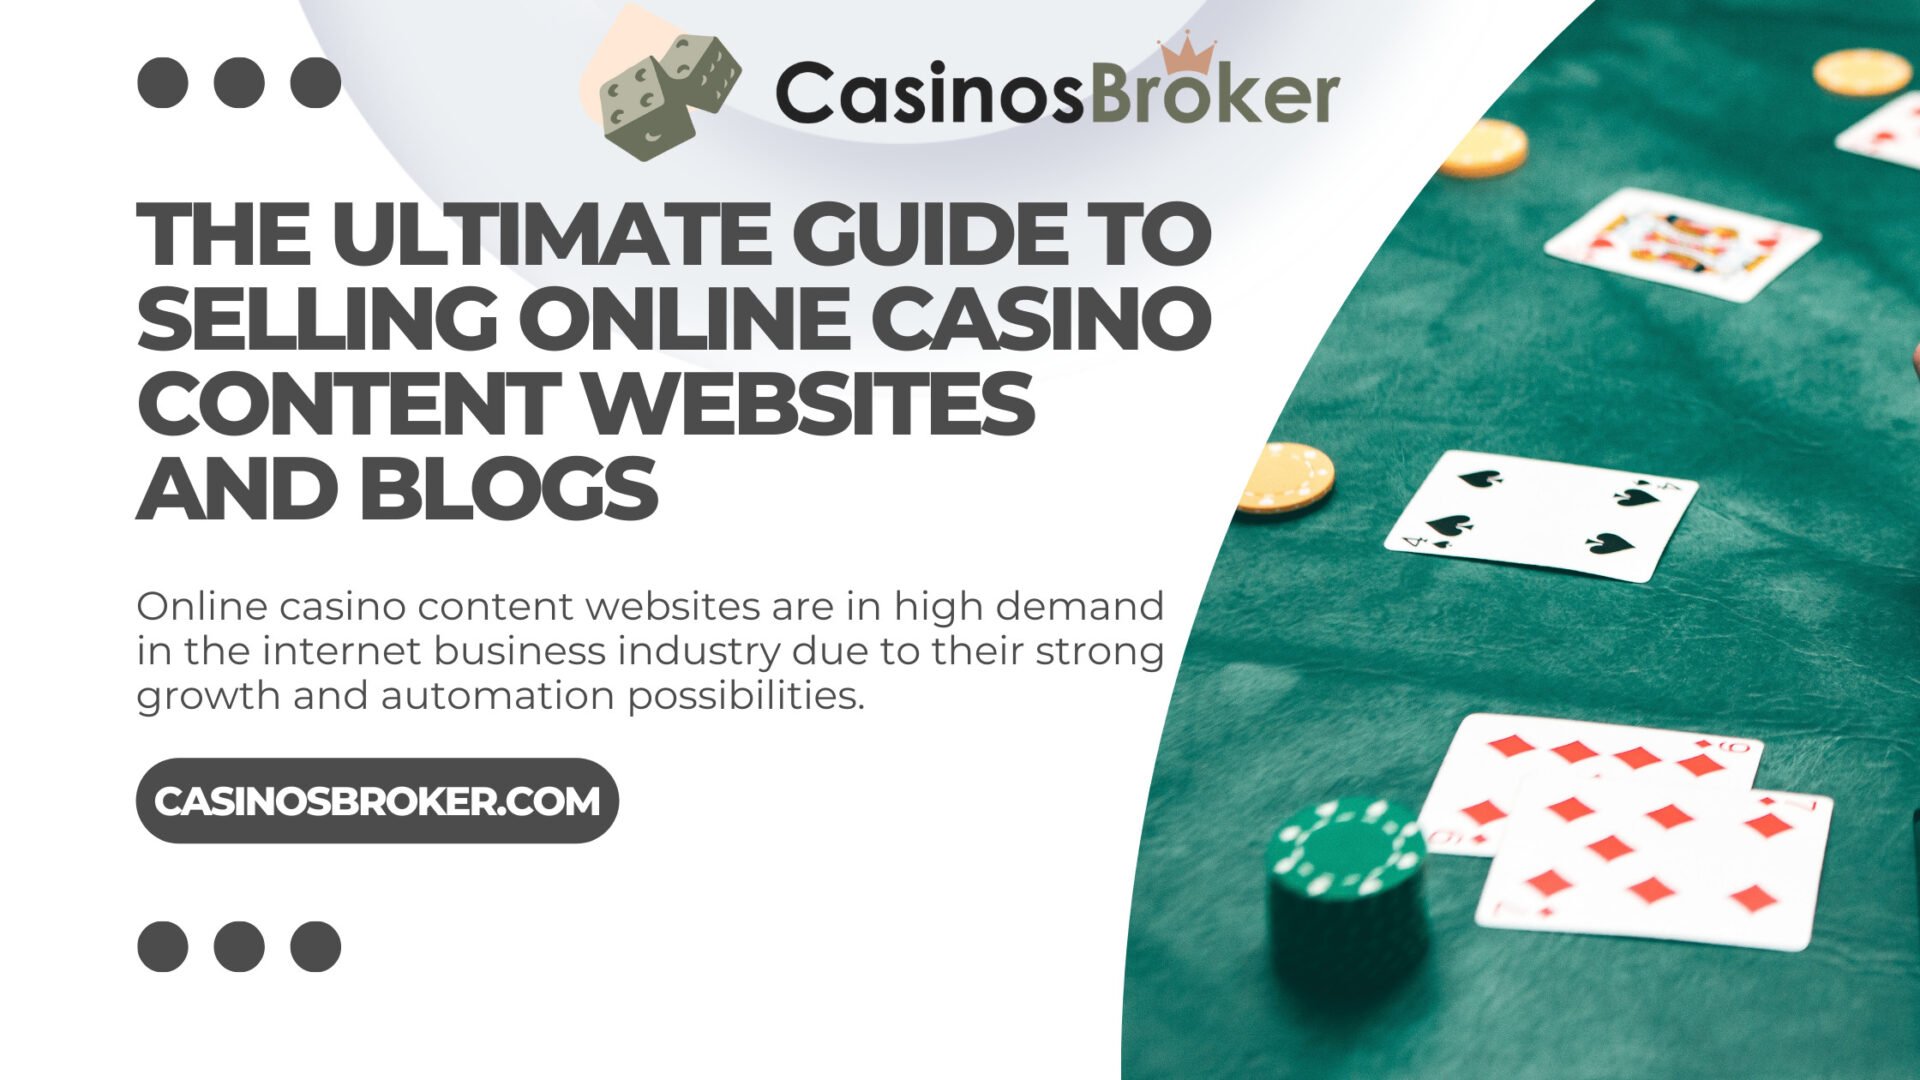 销售网上赌场内容网站和博客的终极指南